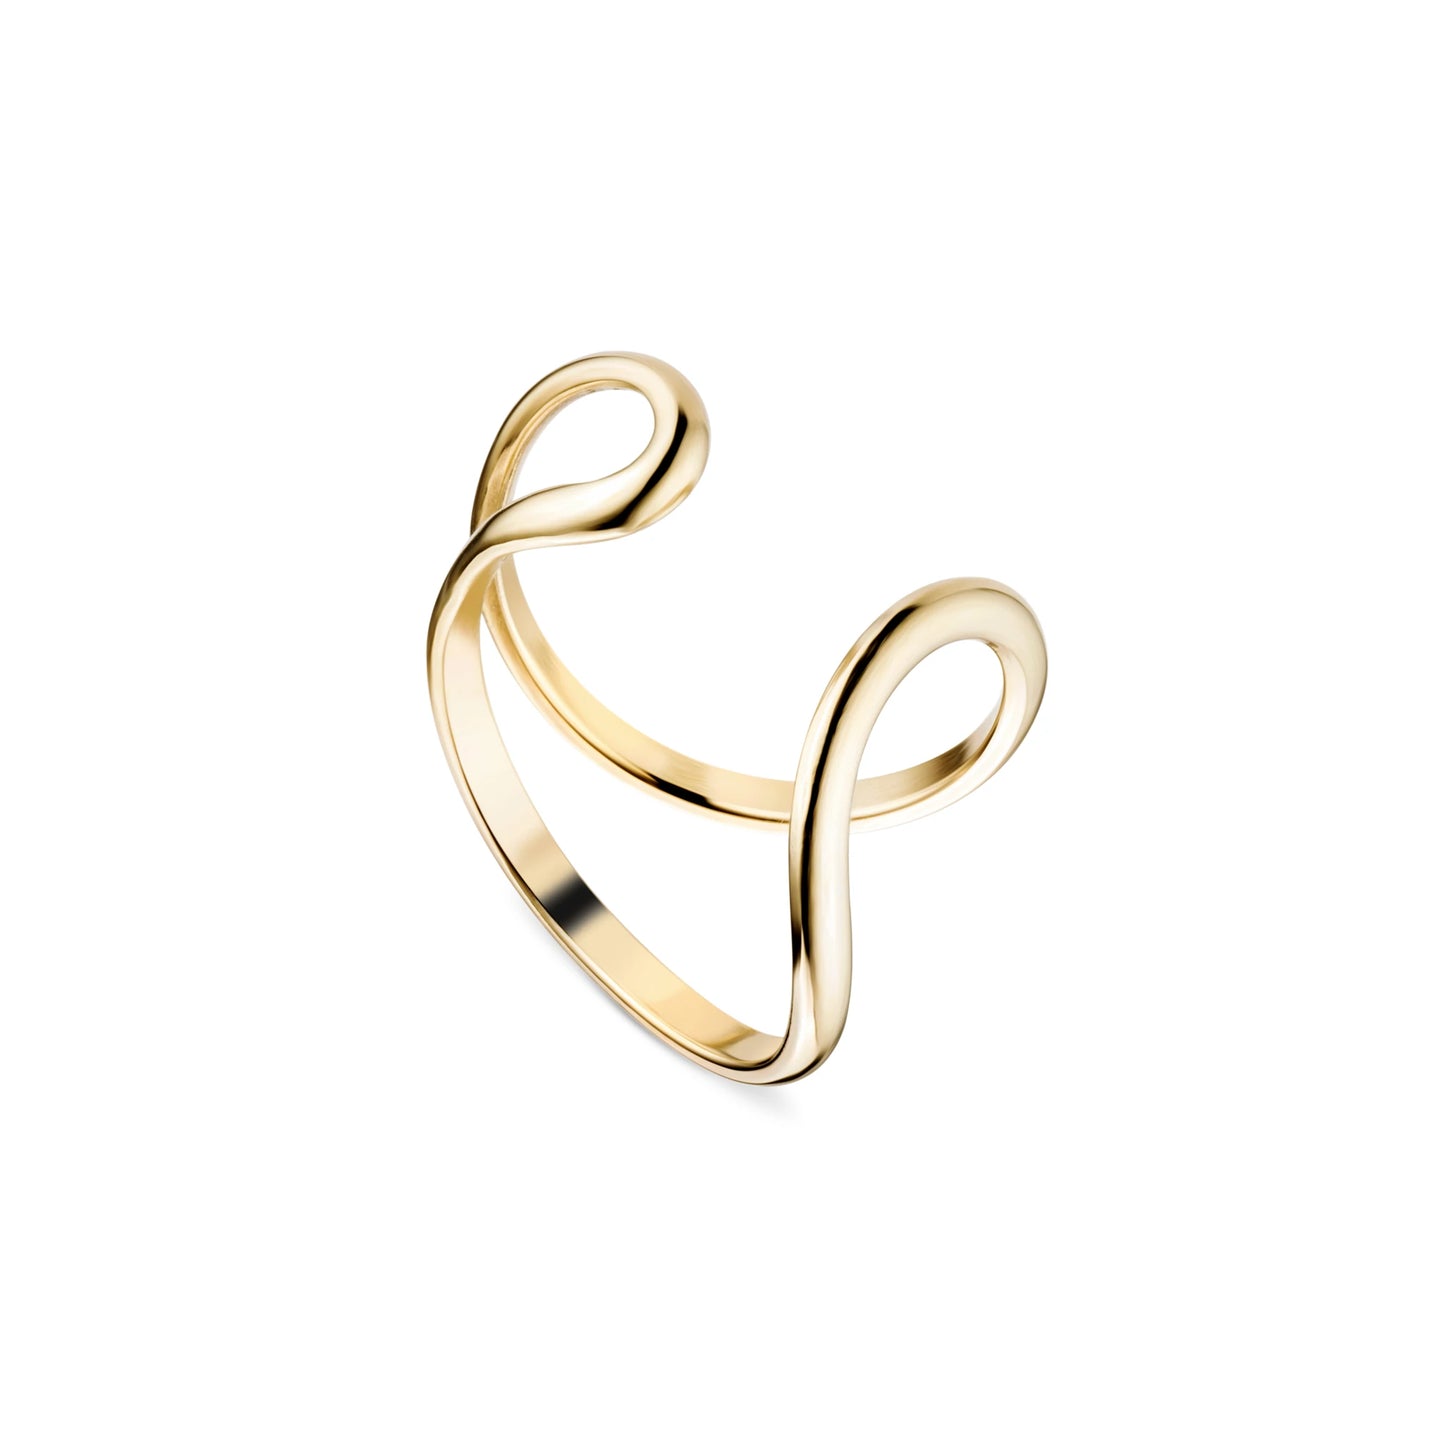 Wave Ring - 9kt Gold